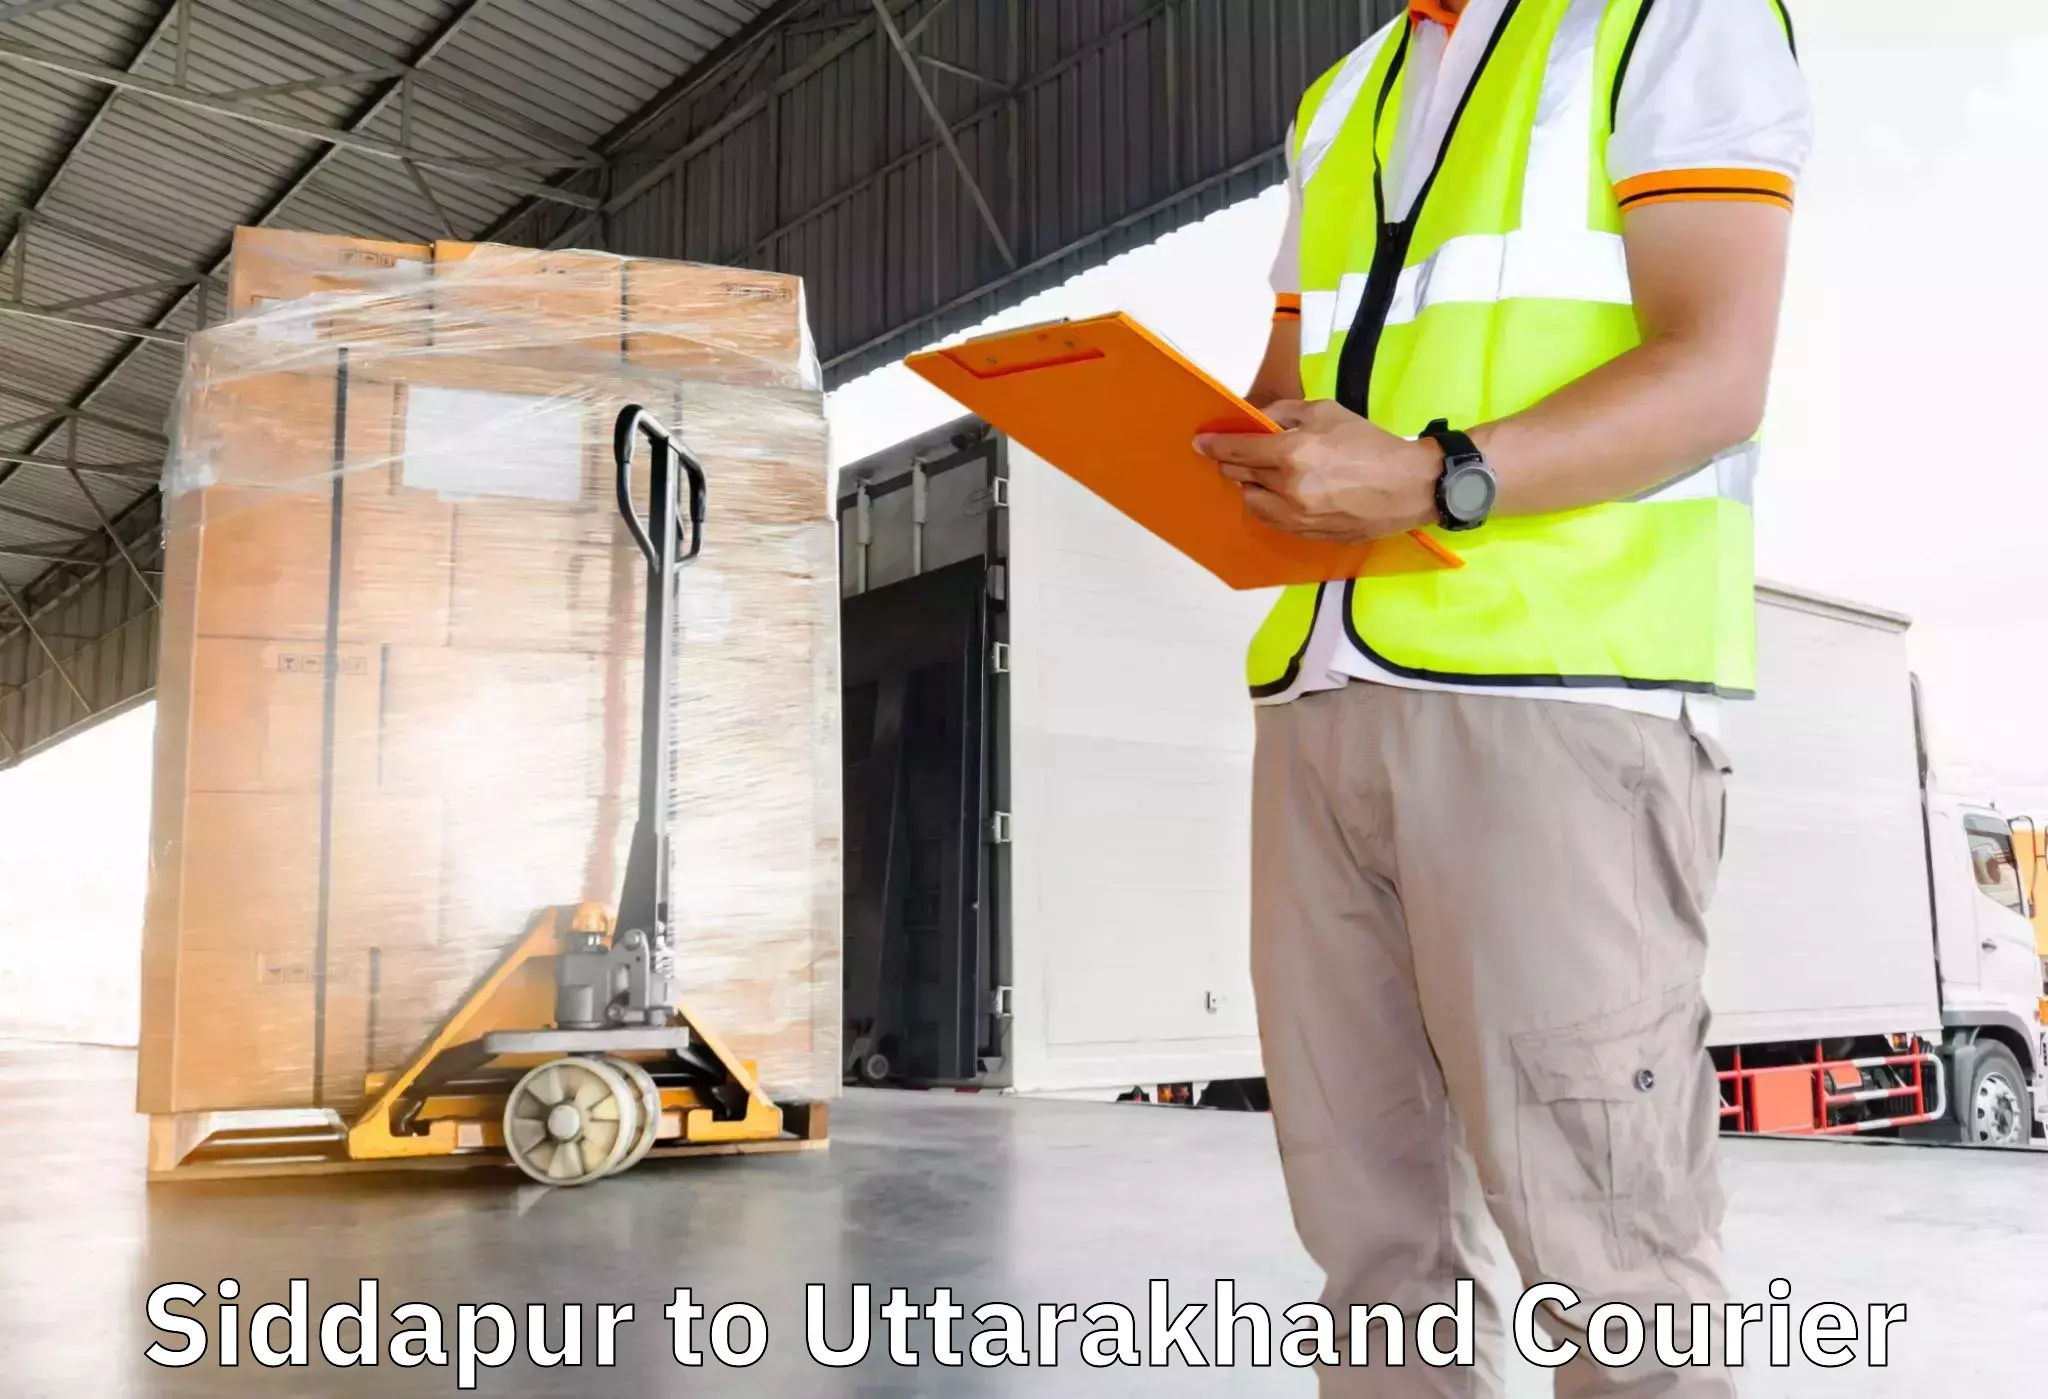 Furniture transport experts Siddapur to Udham Singh Nagar